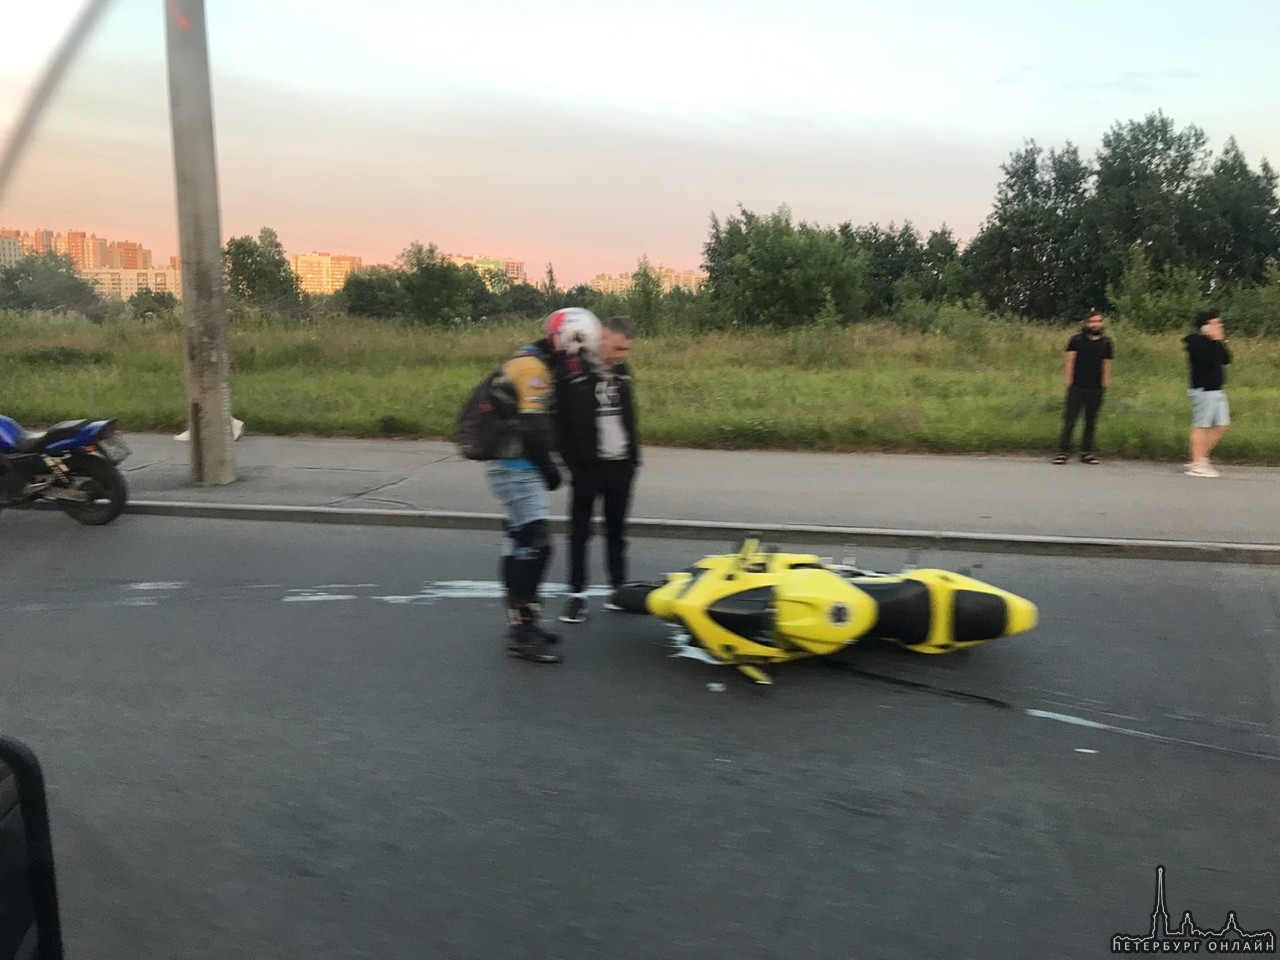 На въезд в Кудрово, Яндекс драйв, разворачиваясь, не пропустил мотоцикл, вроде все живы и здоровы